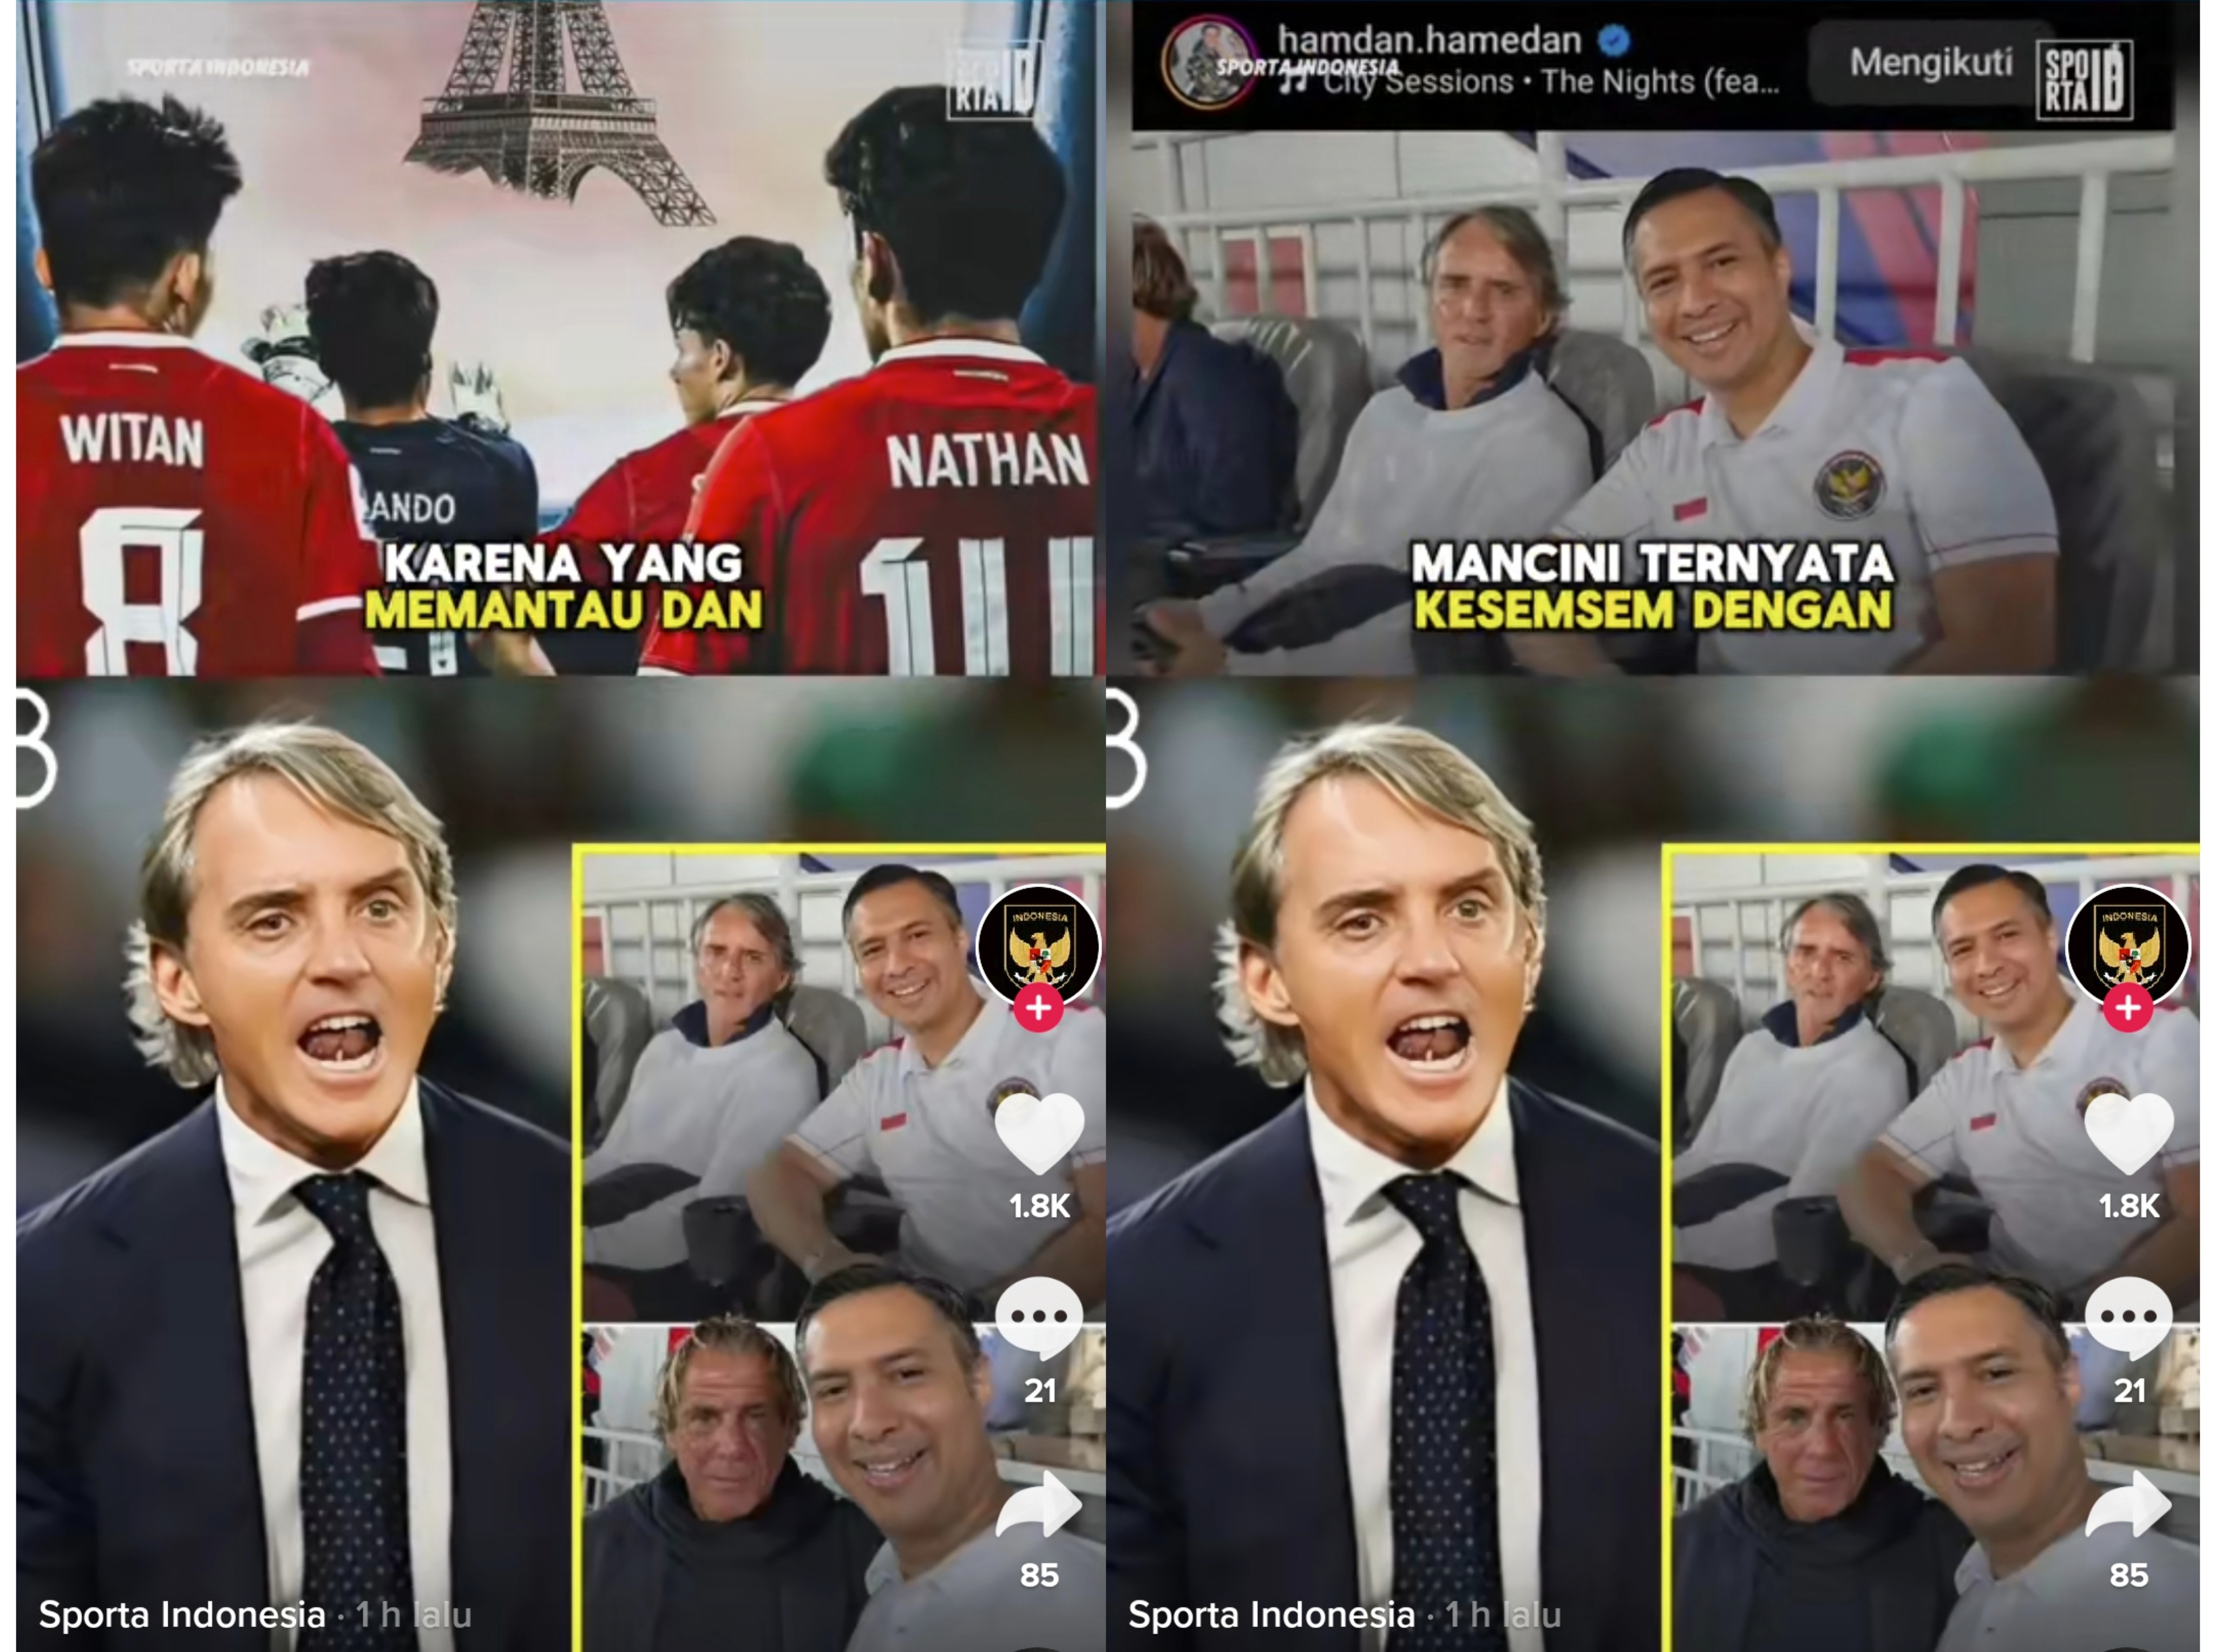 Pemain Timnas Indonesia Muda di Rumorkan Masuk Radar Roberto Mancini, Liga Serie-A Bakal Diisi Marcellino Cs?